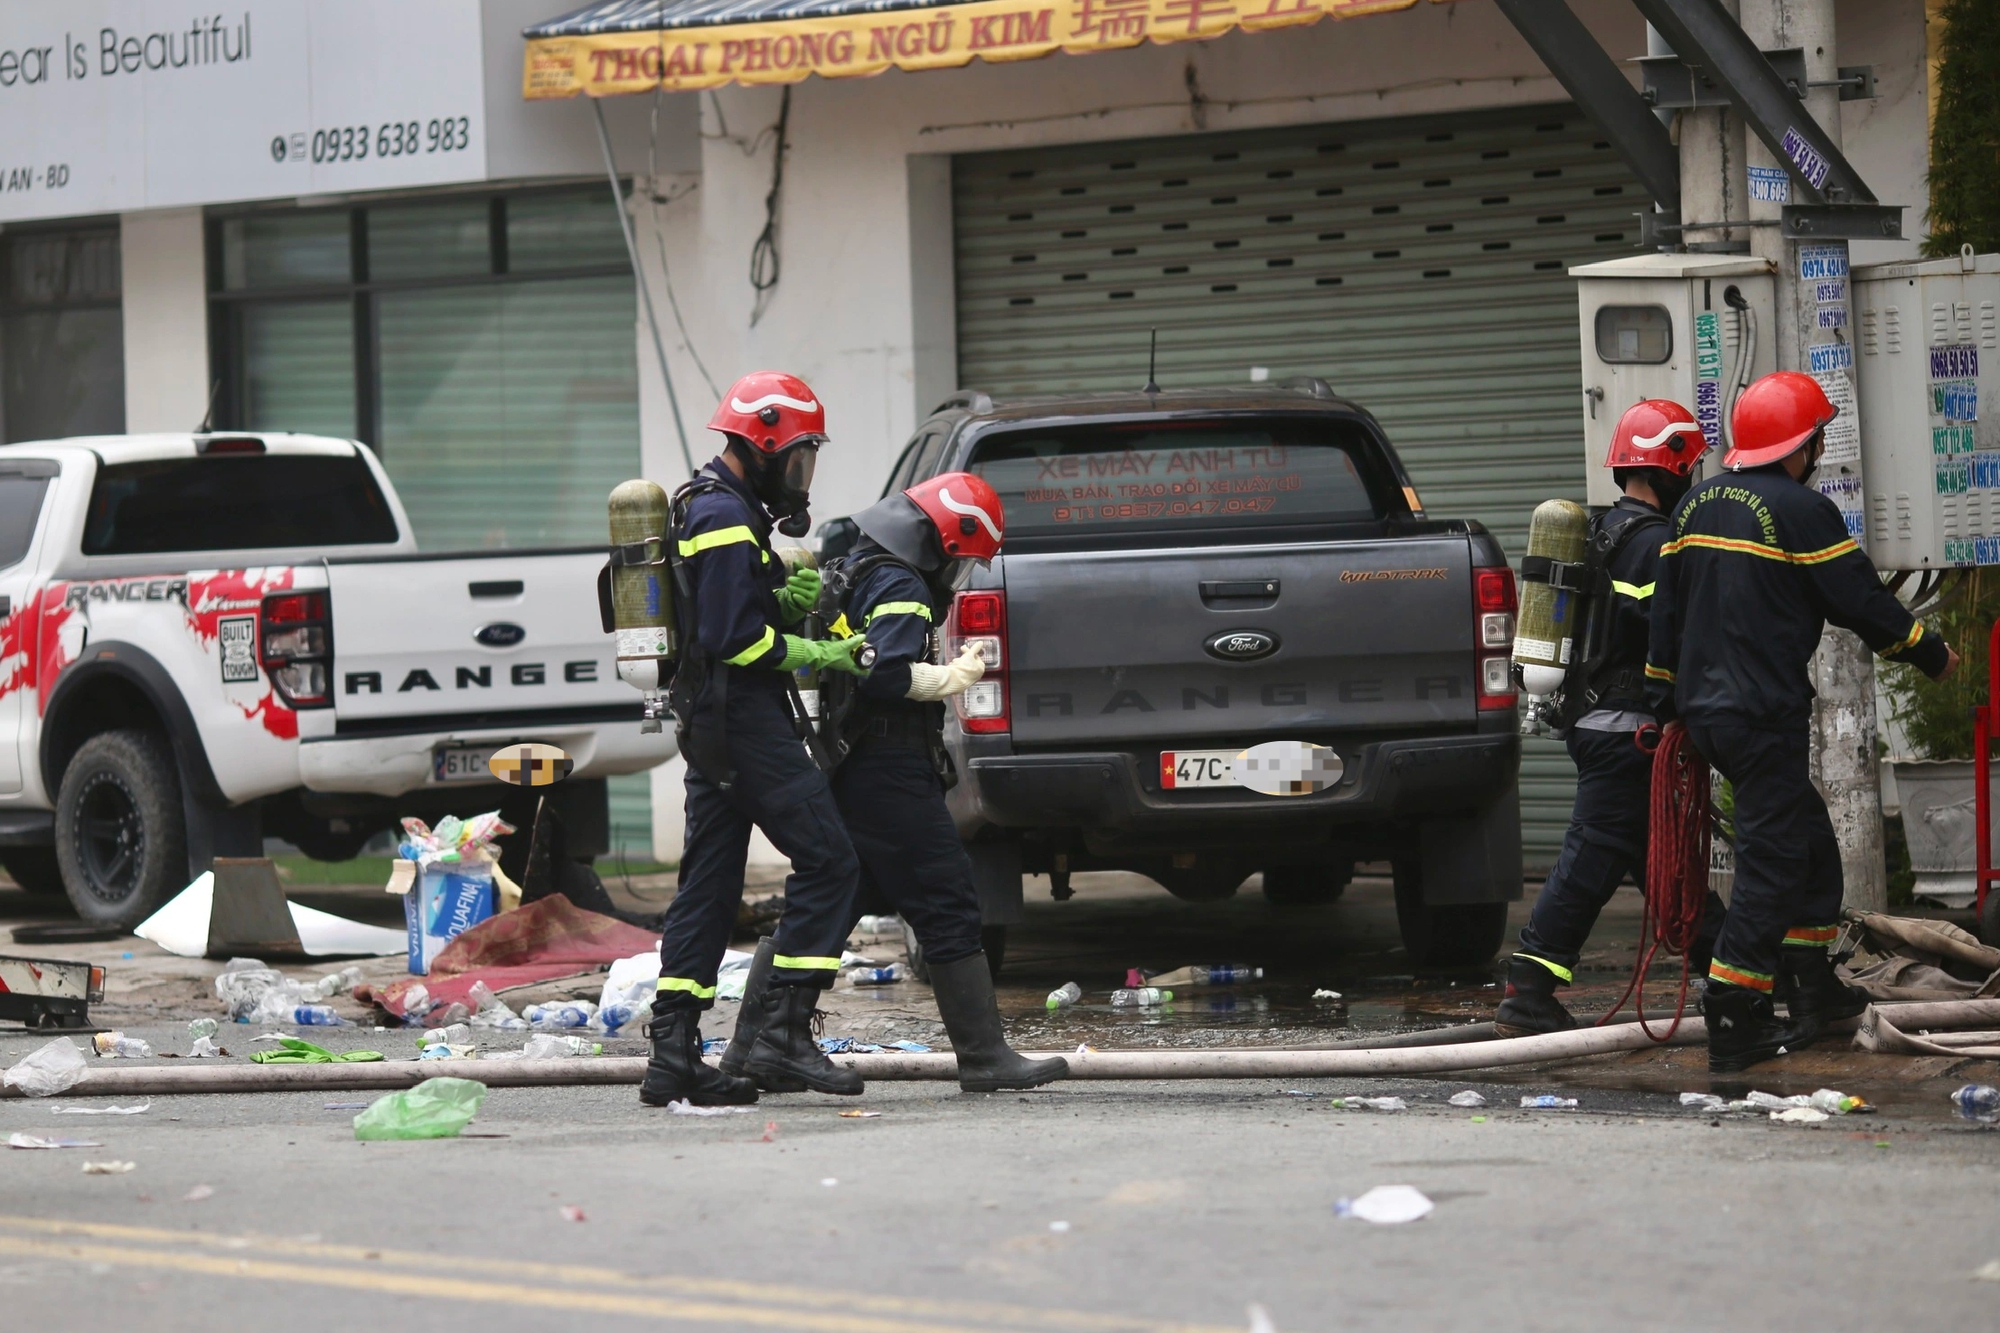 Cháy quán karaoke 12 người chết: Lính cứu hỏa kể lại giây phút tiếp cận hiện trường - Ảnh 5.